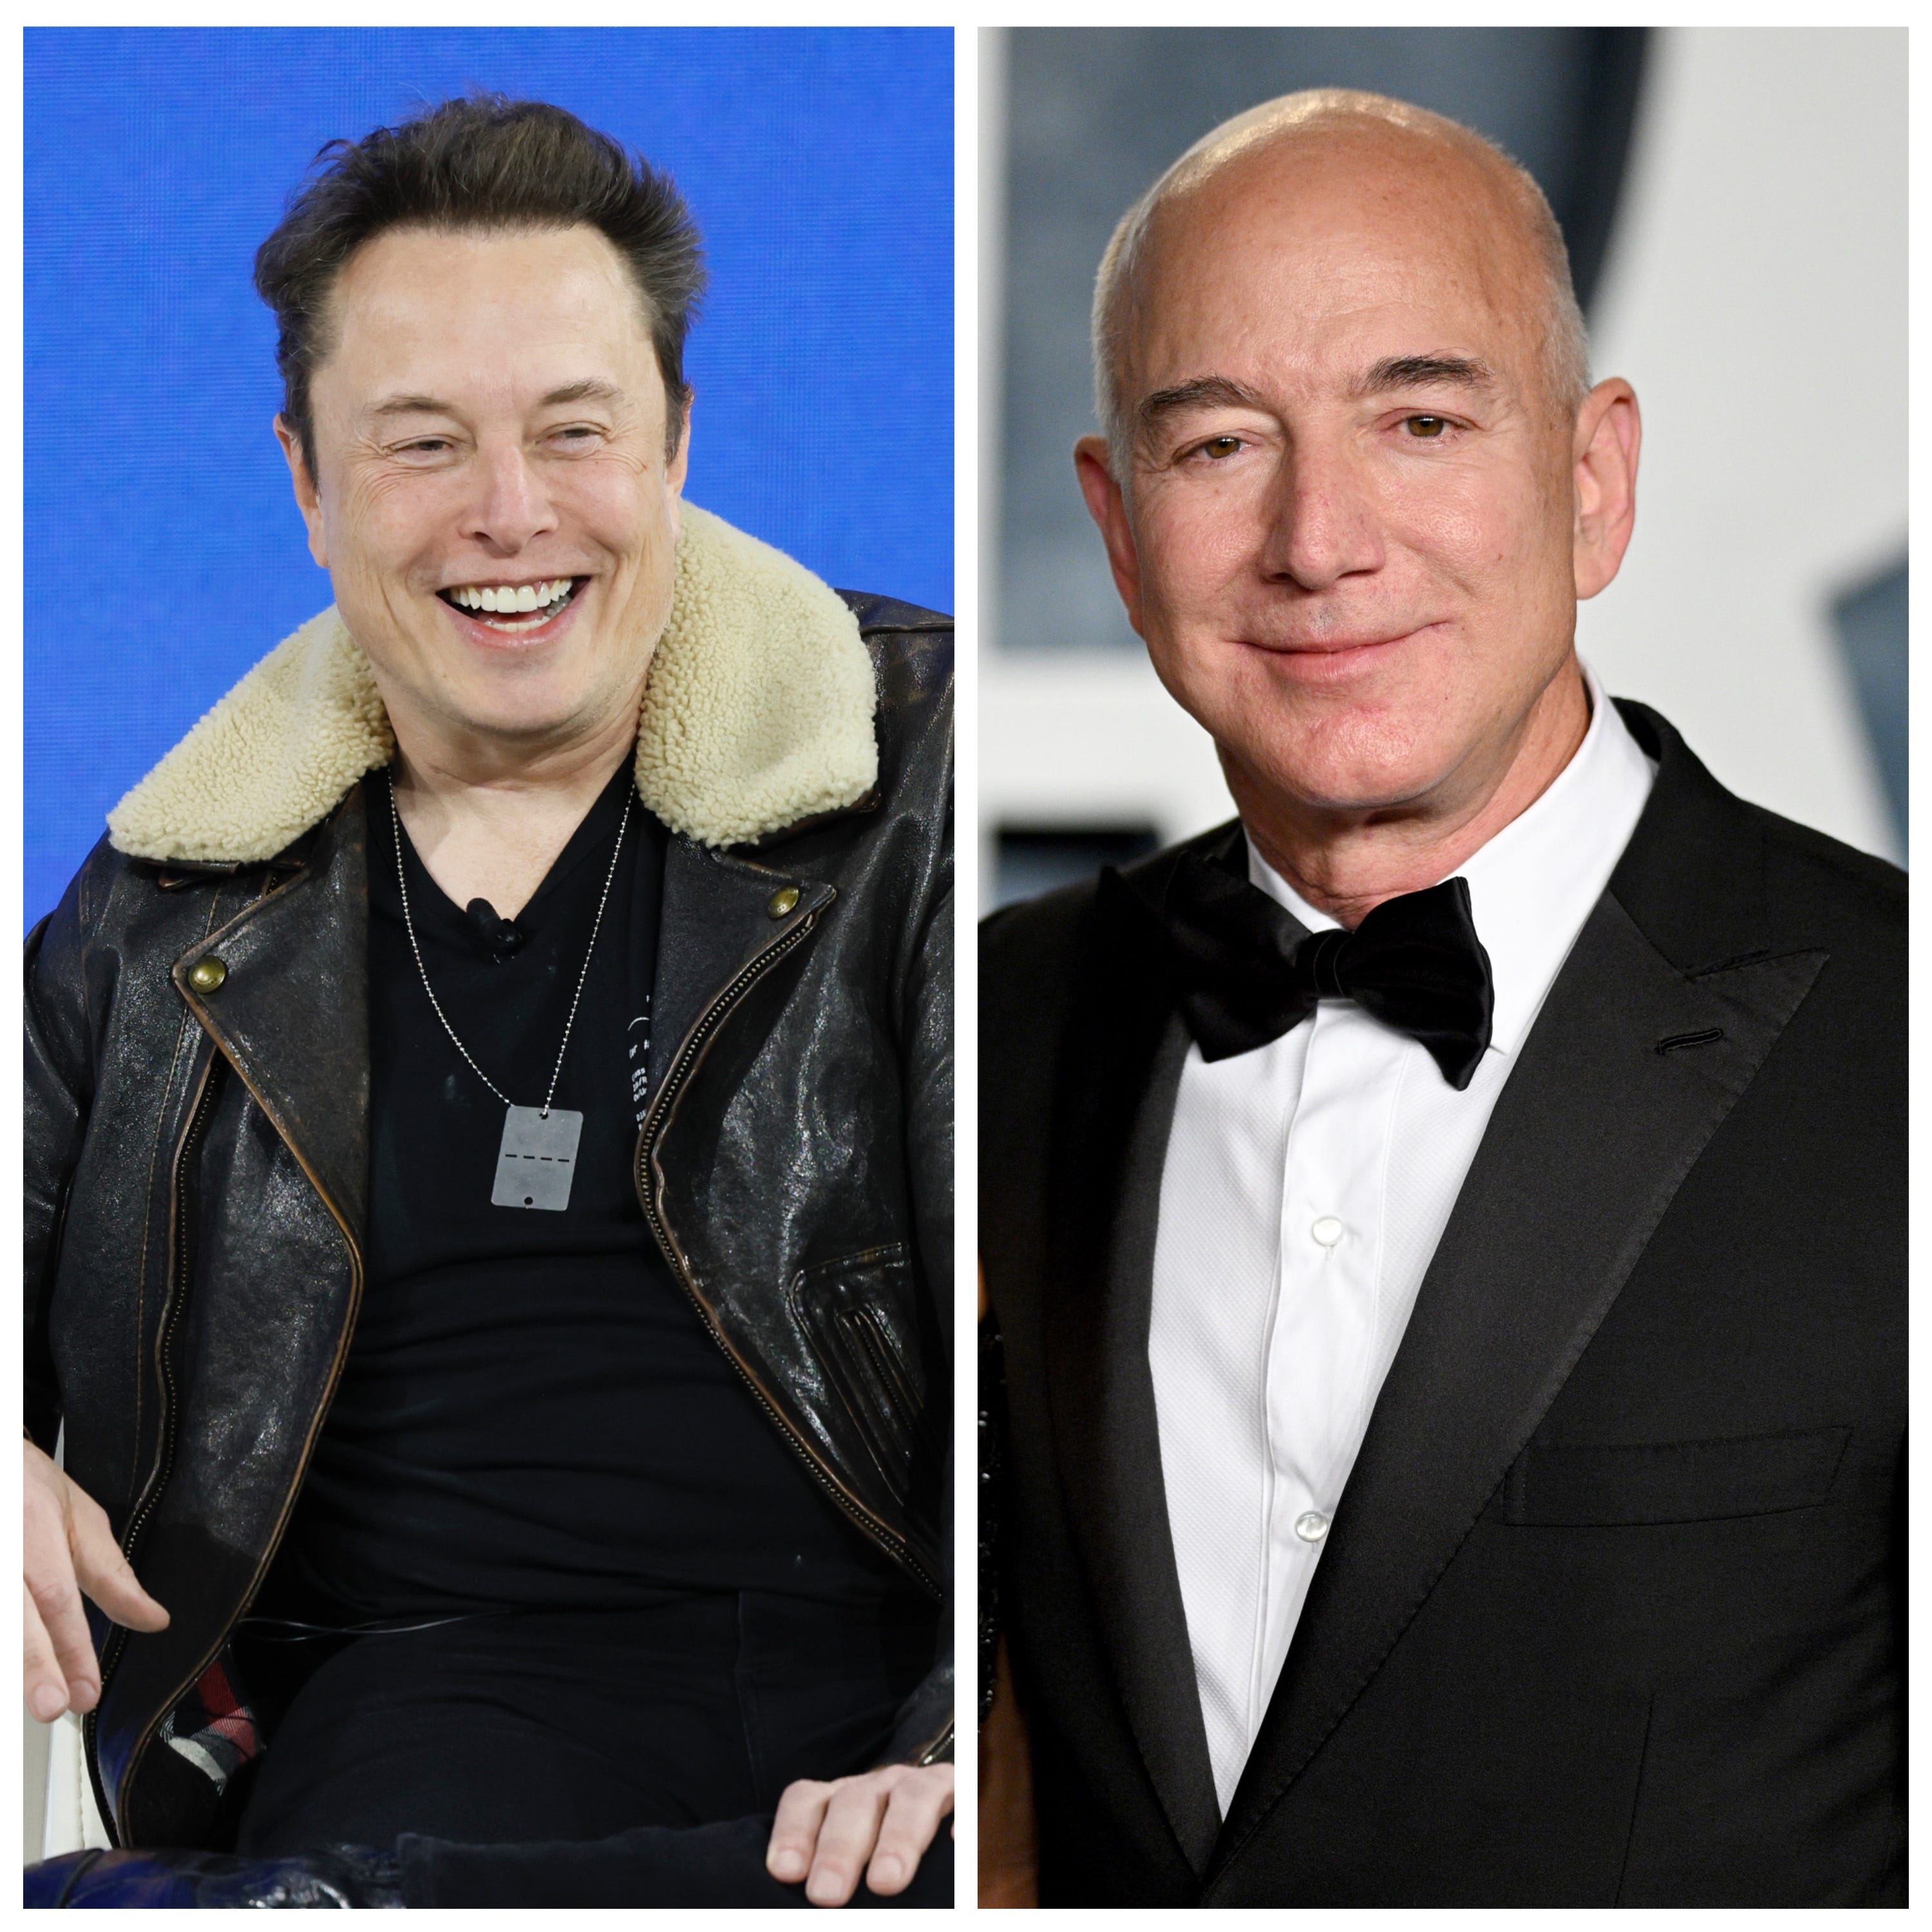 Fotocollage von Elon Musk (links) und Jeff Bezos (rechts)